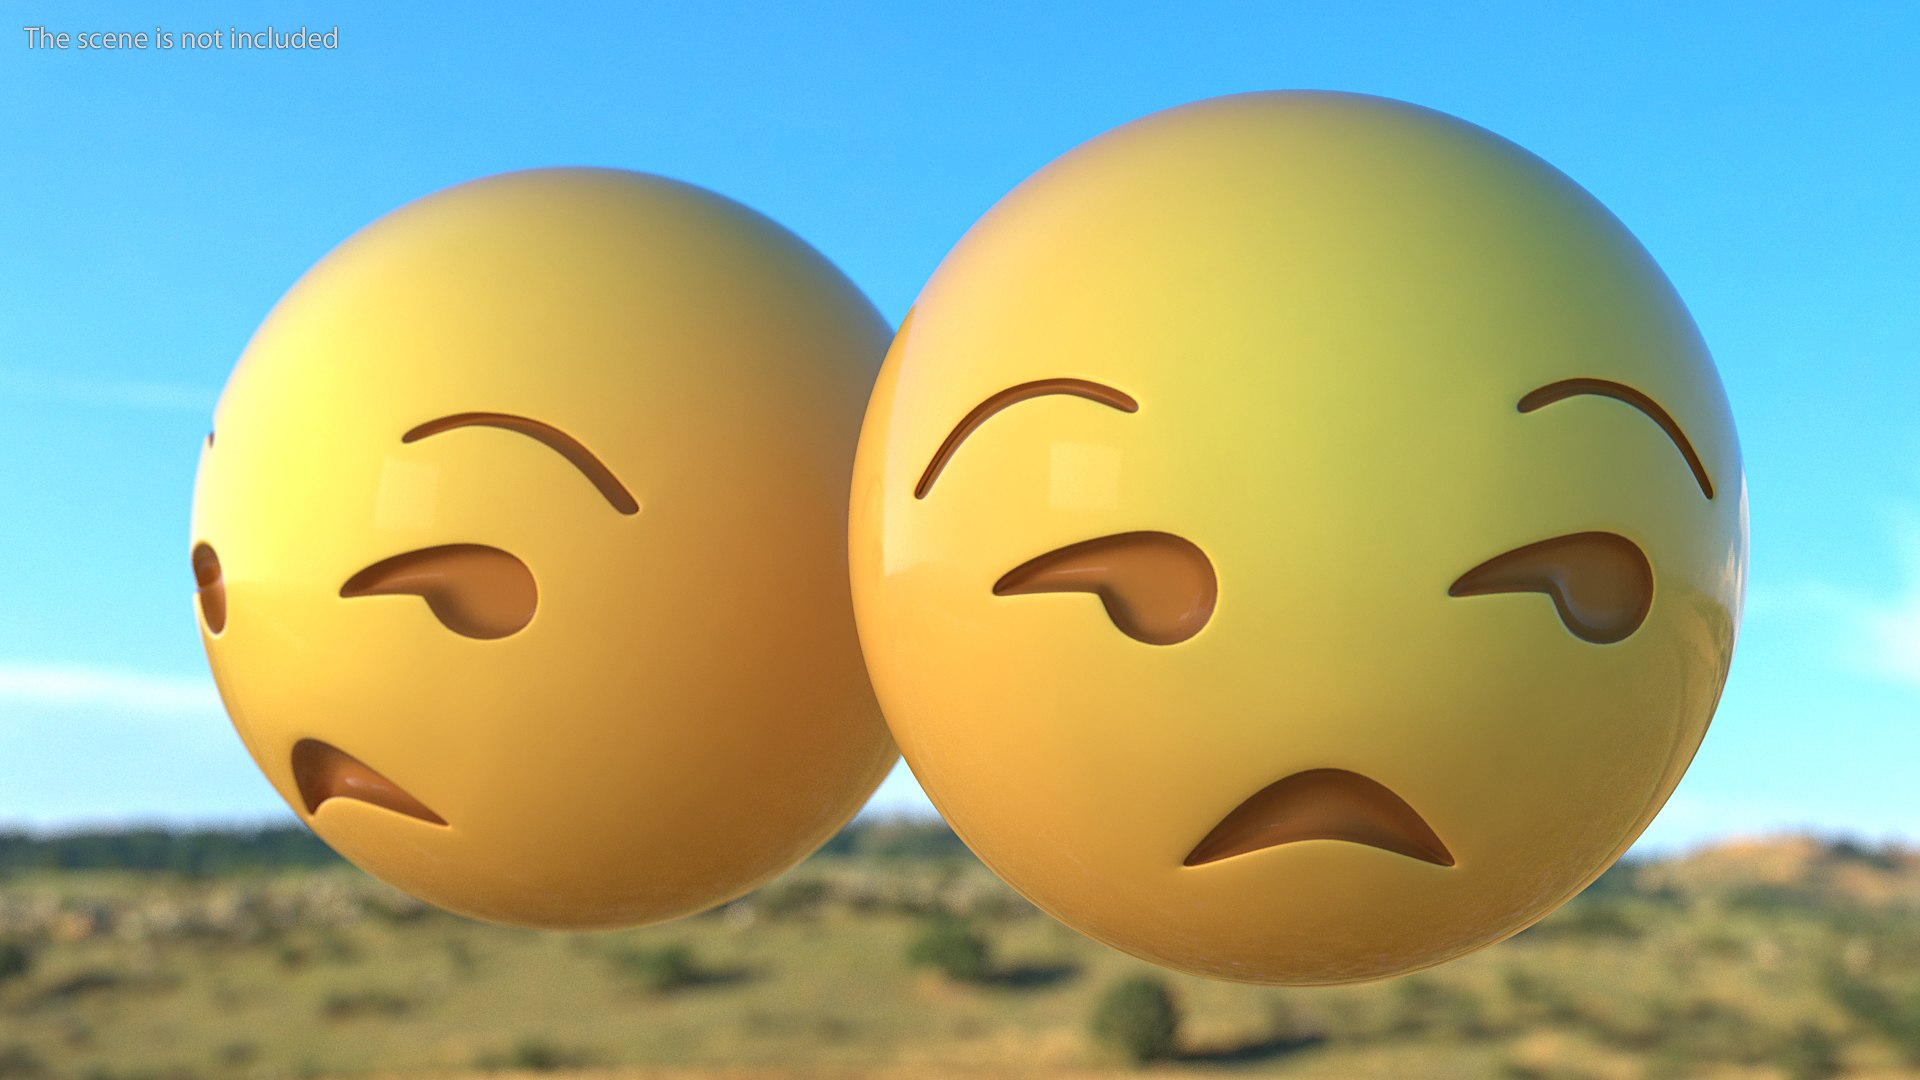 unamused emoji